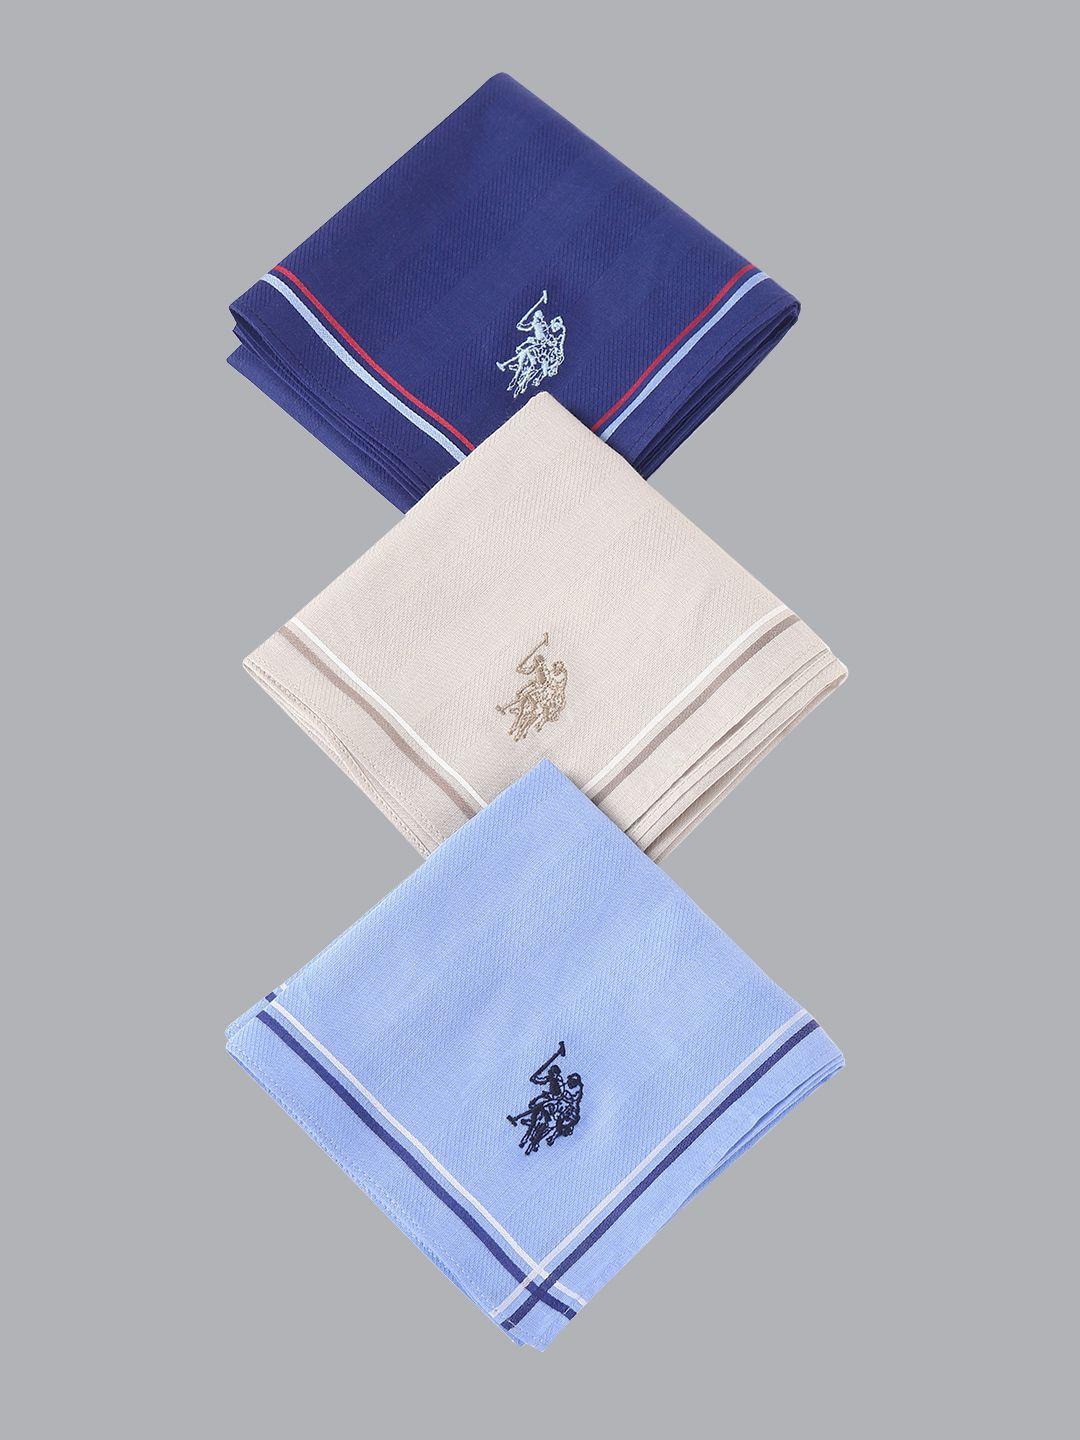 u.s. polo assn. men pack of 3 assorted cotton handkerchiefs